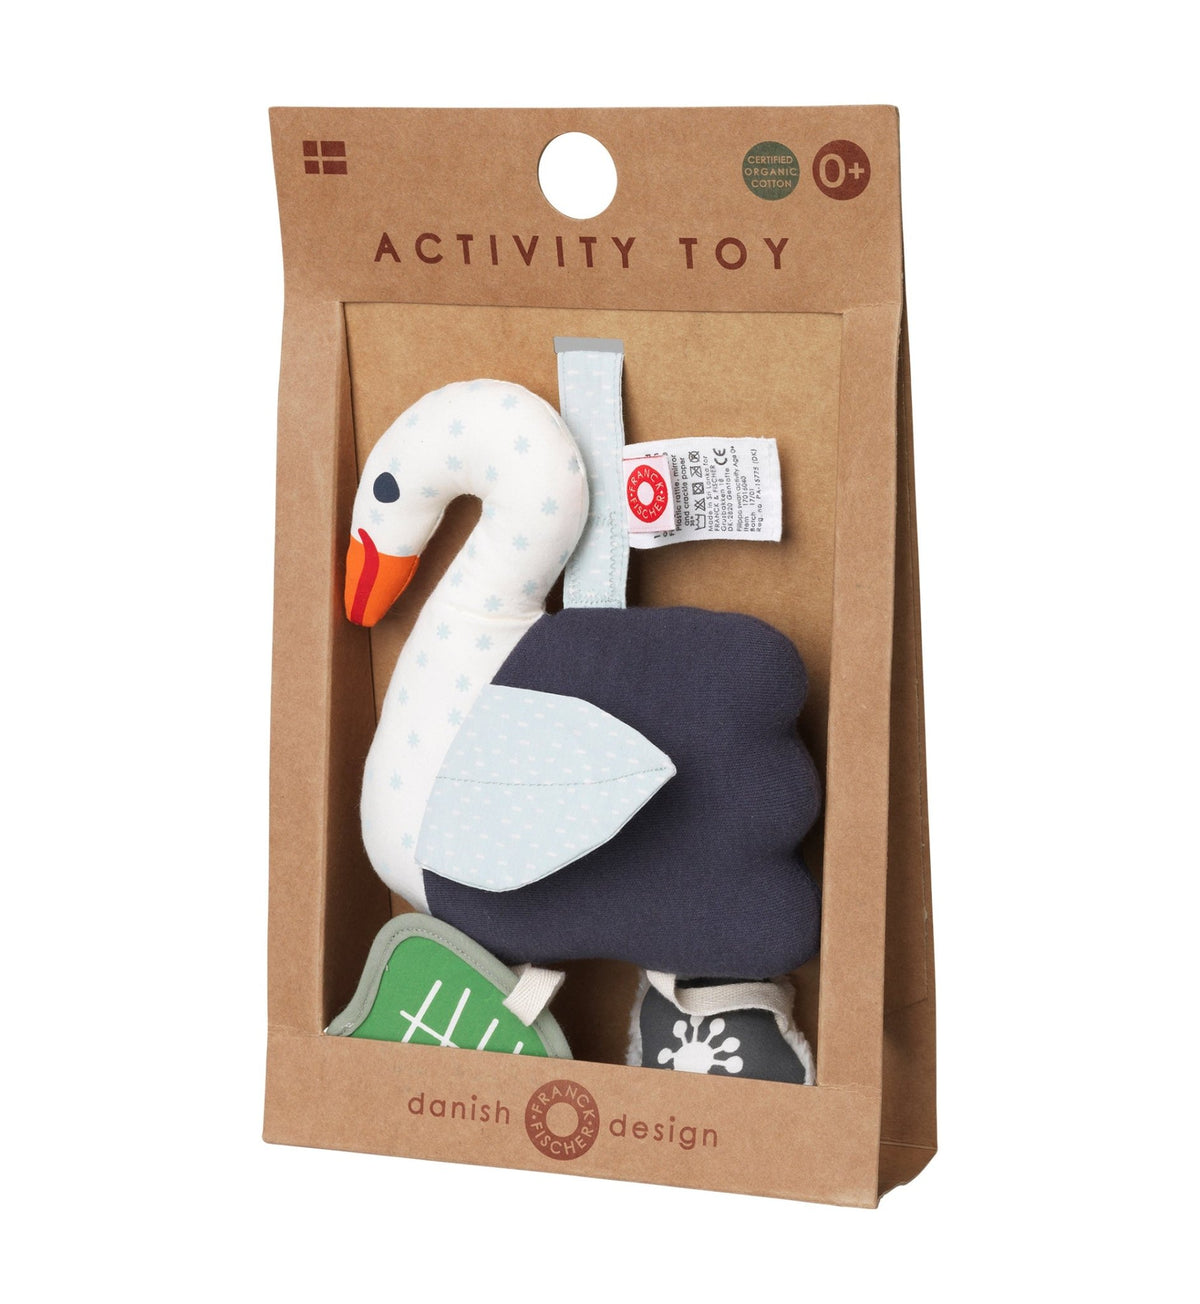 Filippa Swan Activity Toy by Franck & Fischer - Maude Kids Decor